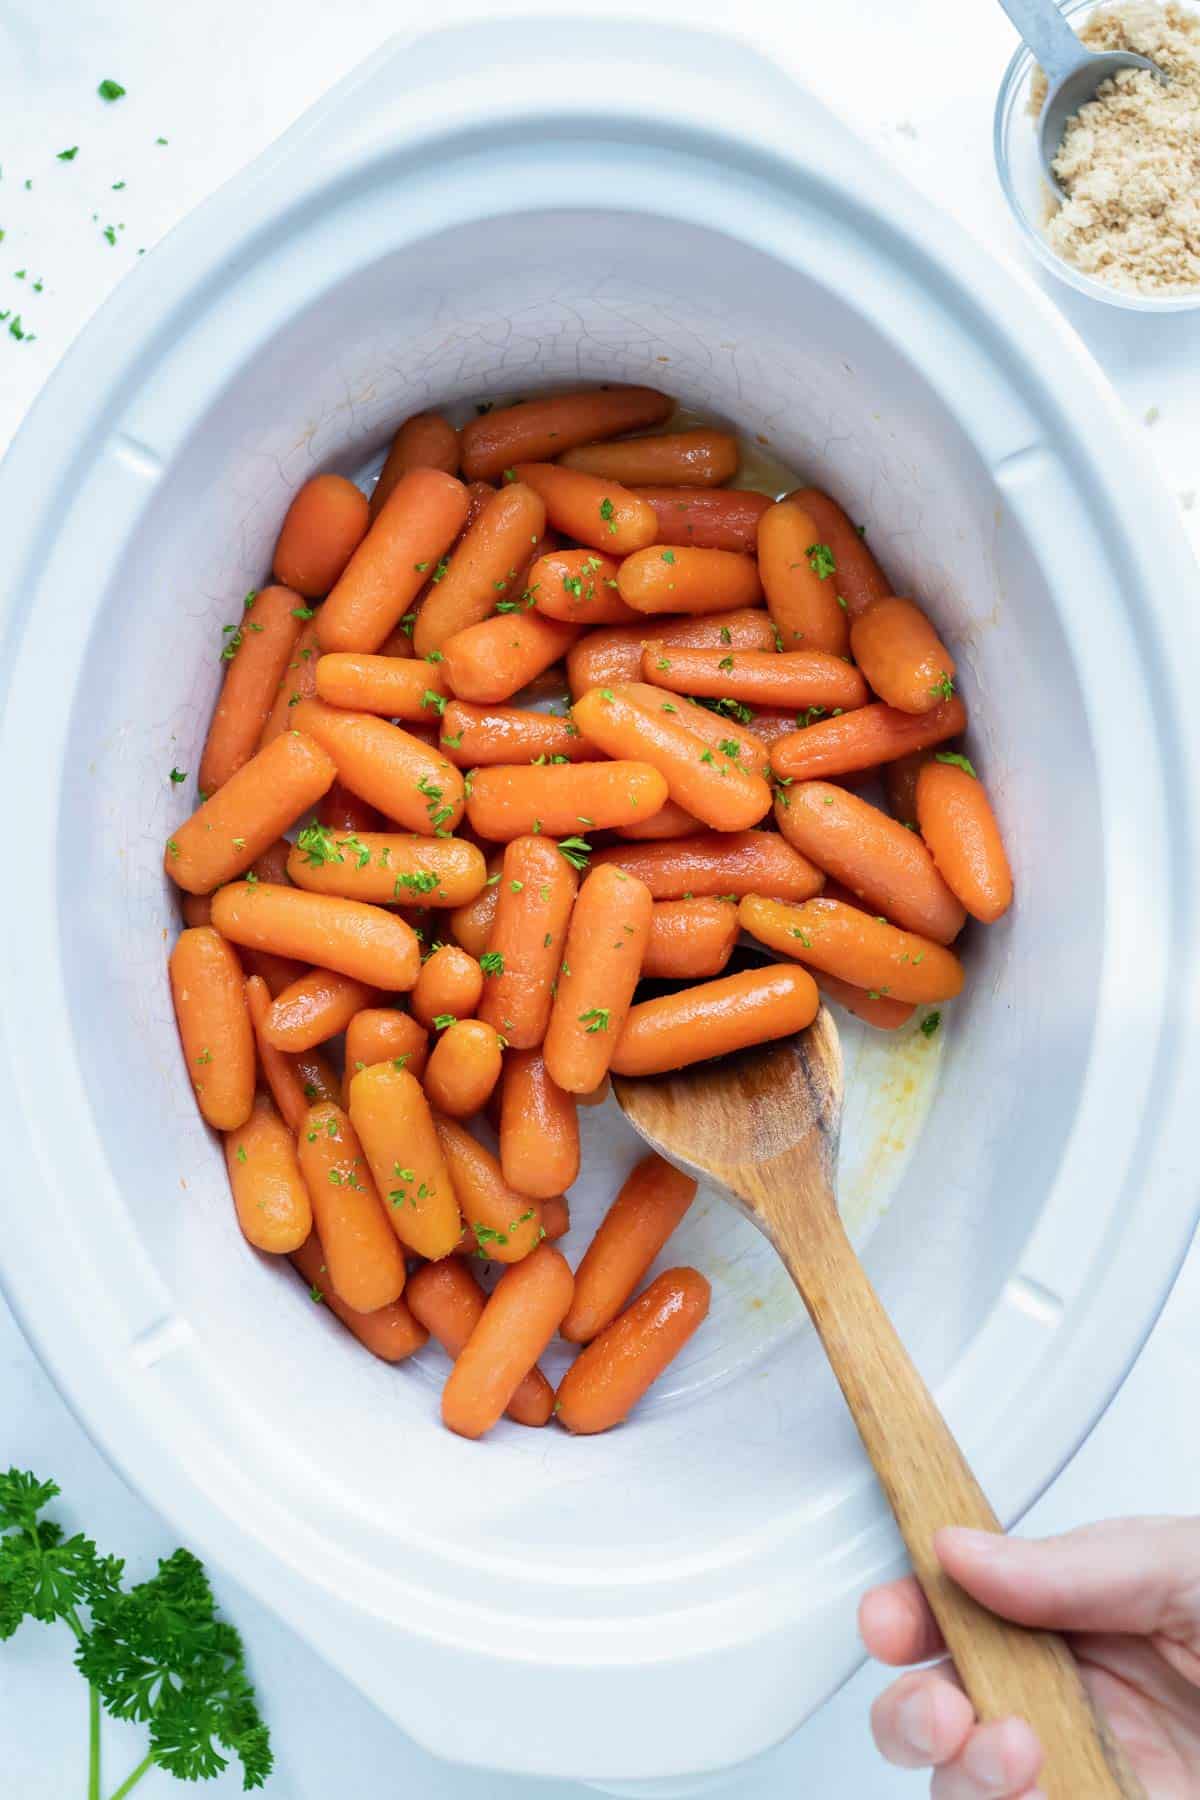 https://www.evolvingtable.com/wp-content/uploads/2022/10/Slow-Cooker-Glazed-Carrots-5.jpg